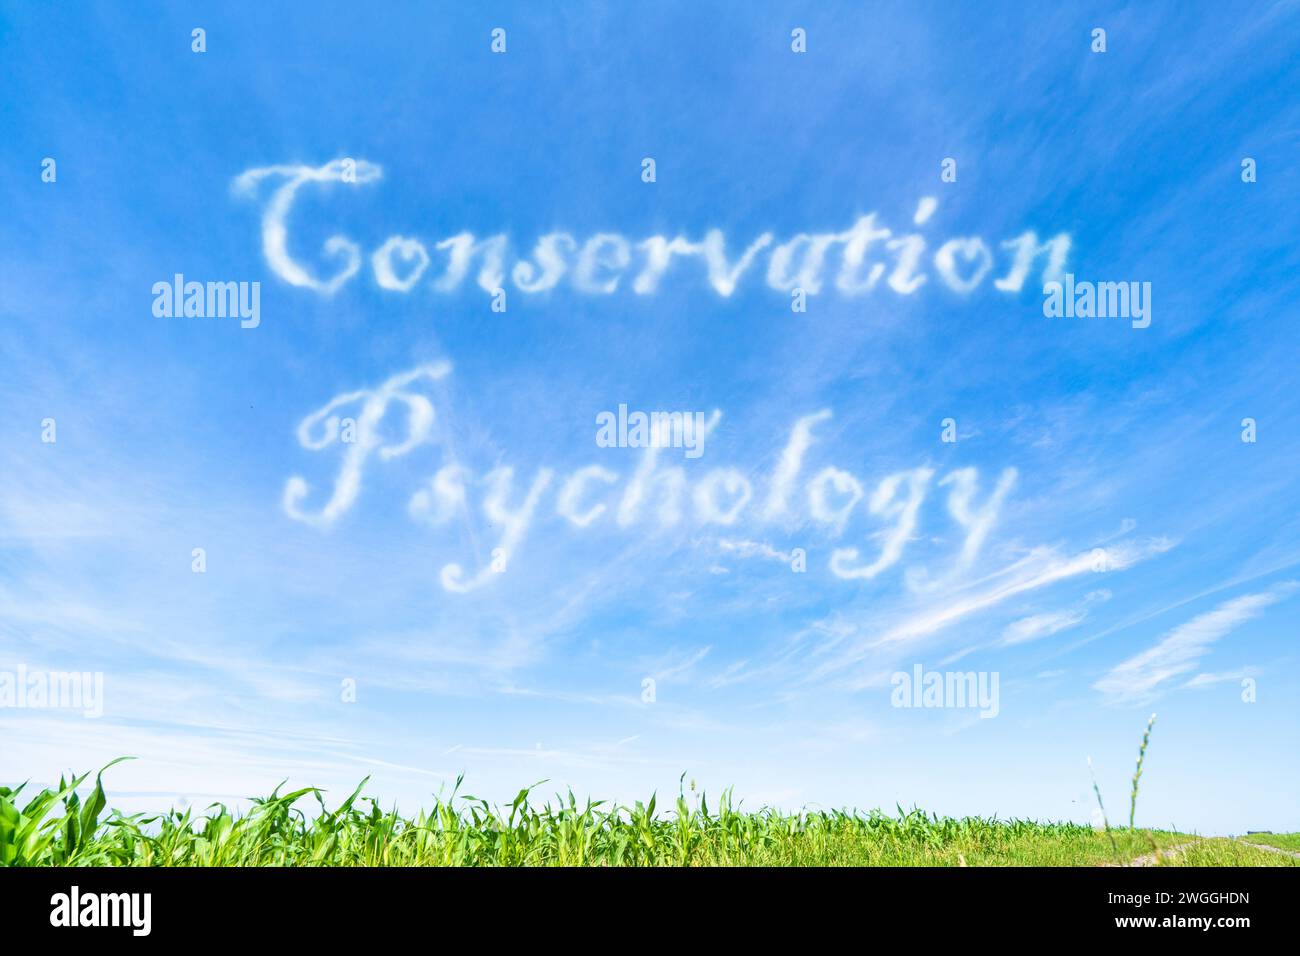 Erhaltungspsychologie: Verständnis menschlicher Verhaltensweisen und Motivationen für Erhaltungsbemühungen. Stockfoto